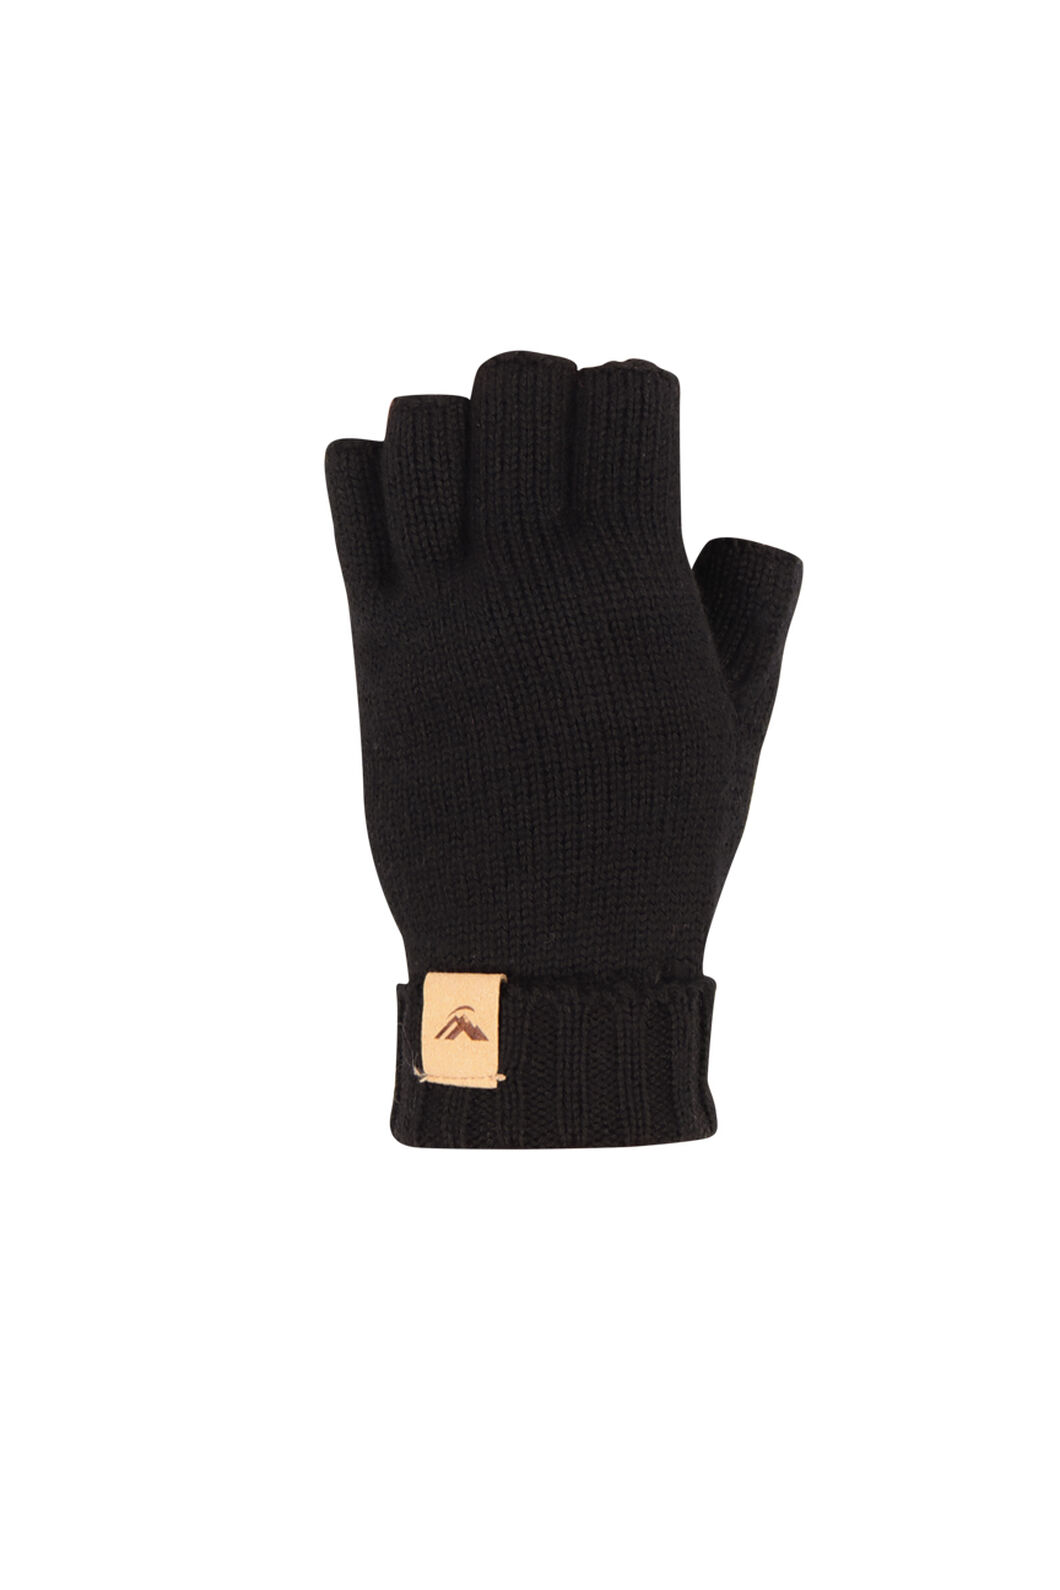 Macpac Merino Fingerless Gloves